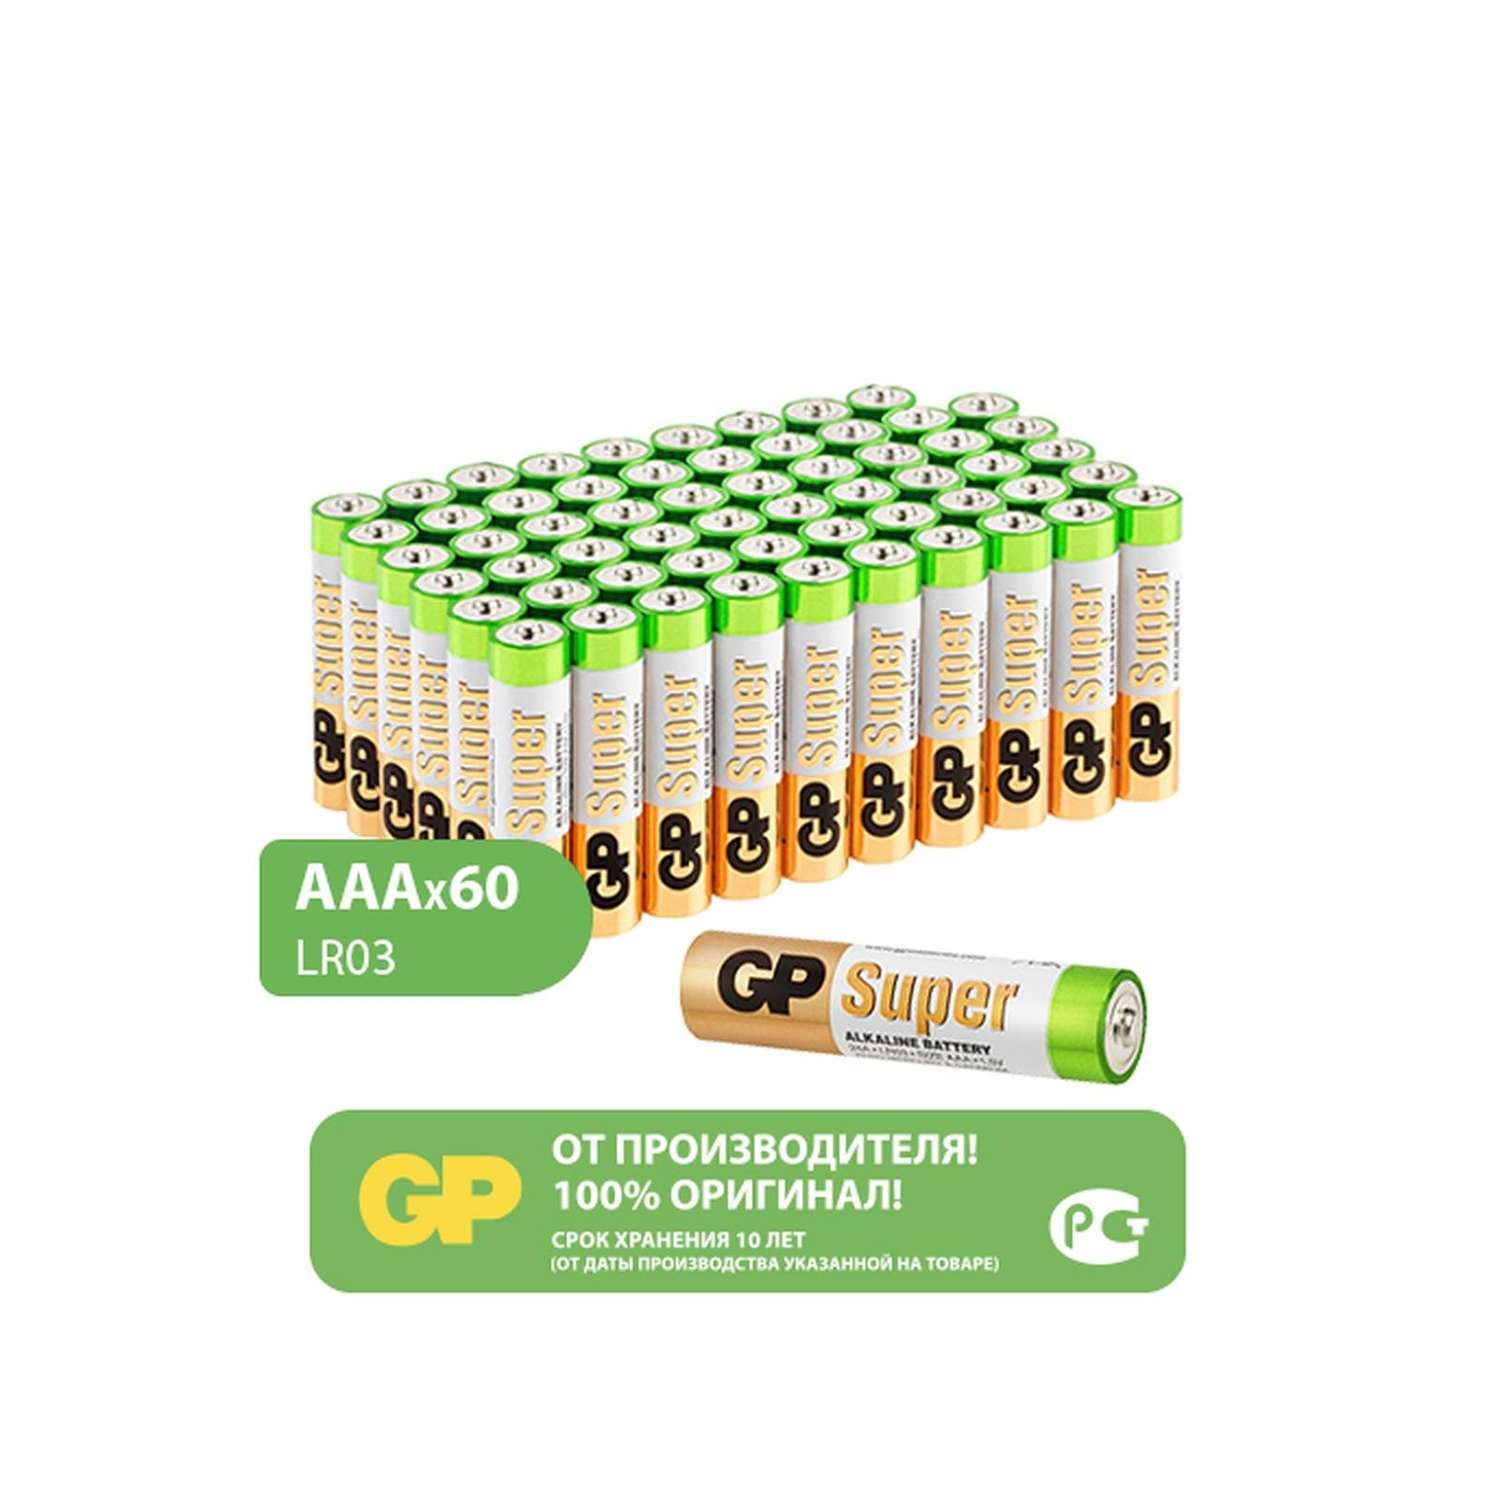 Батарейки АAA GP (мизинцы) 60 штук в упаковке - фото 1